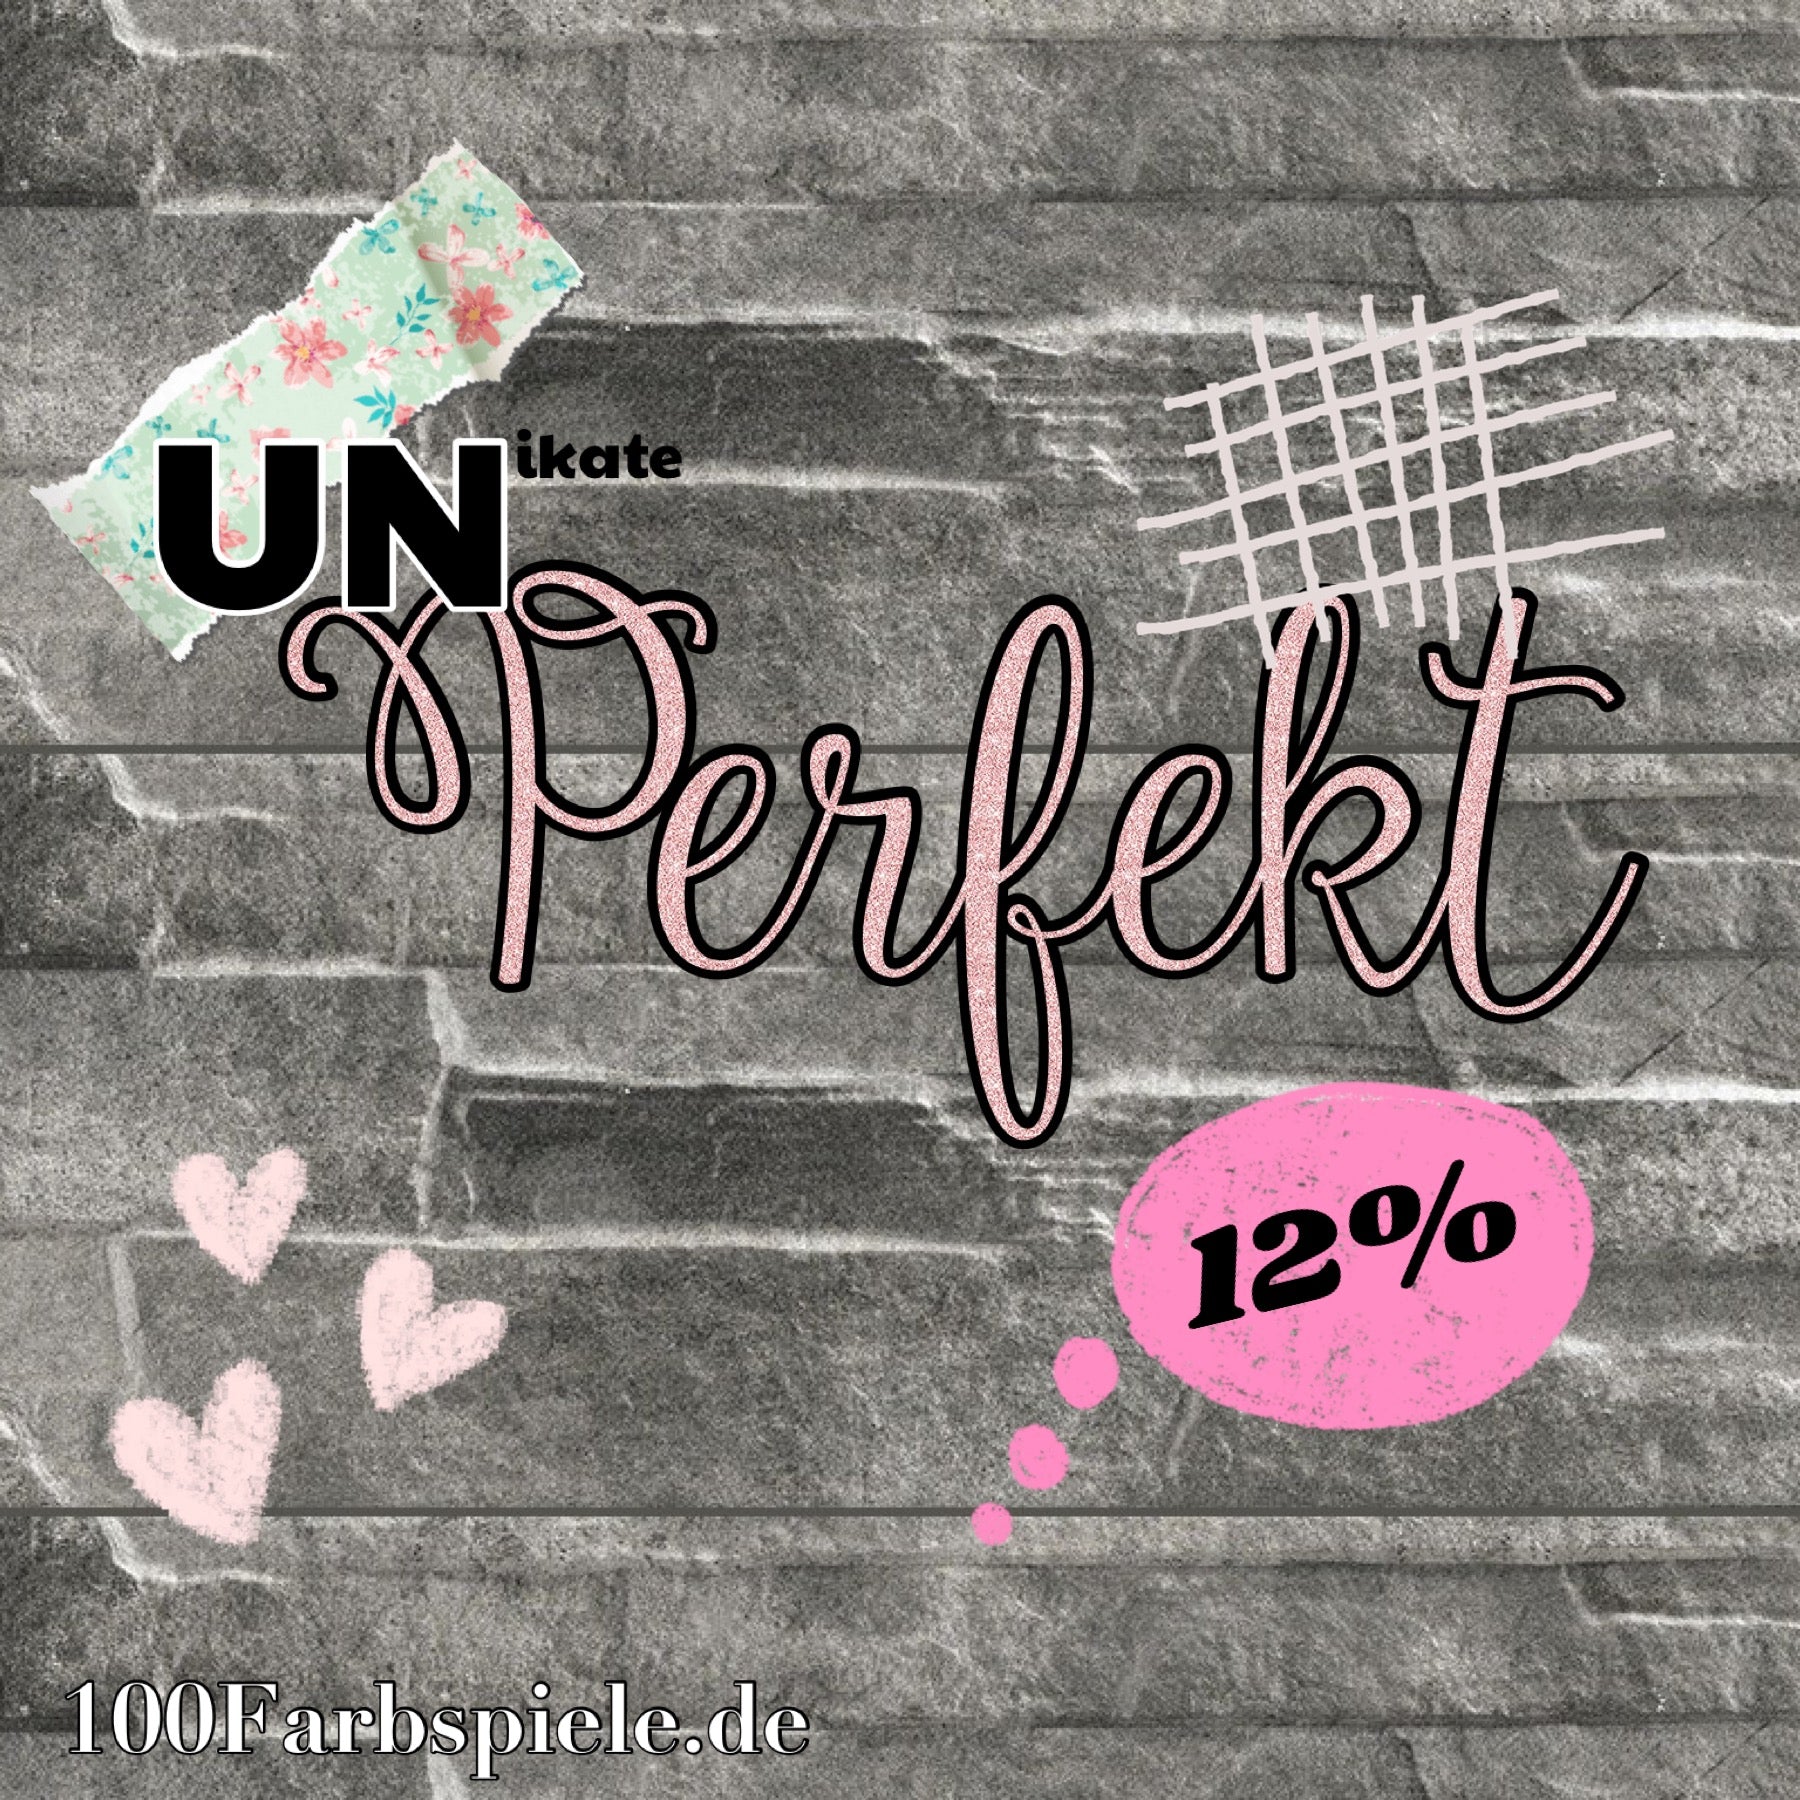 100Farbspiele UNperfekt  SALE 12%